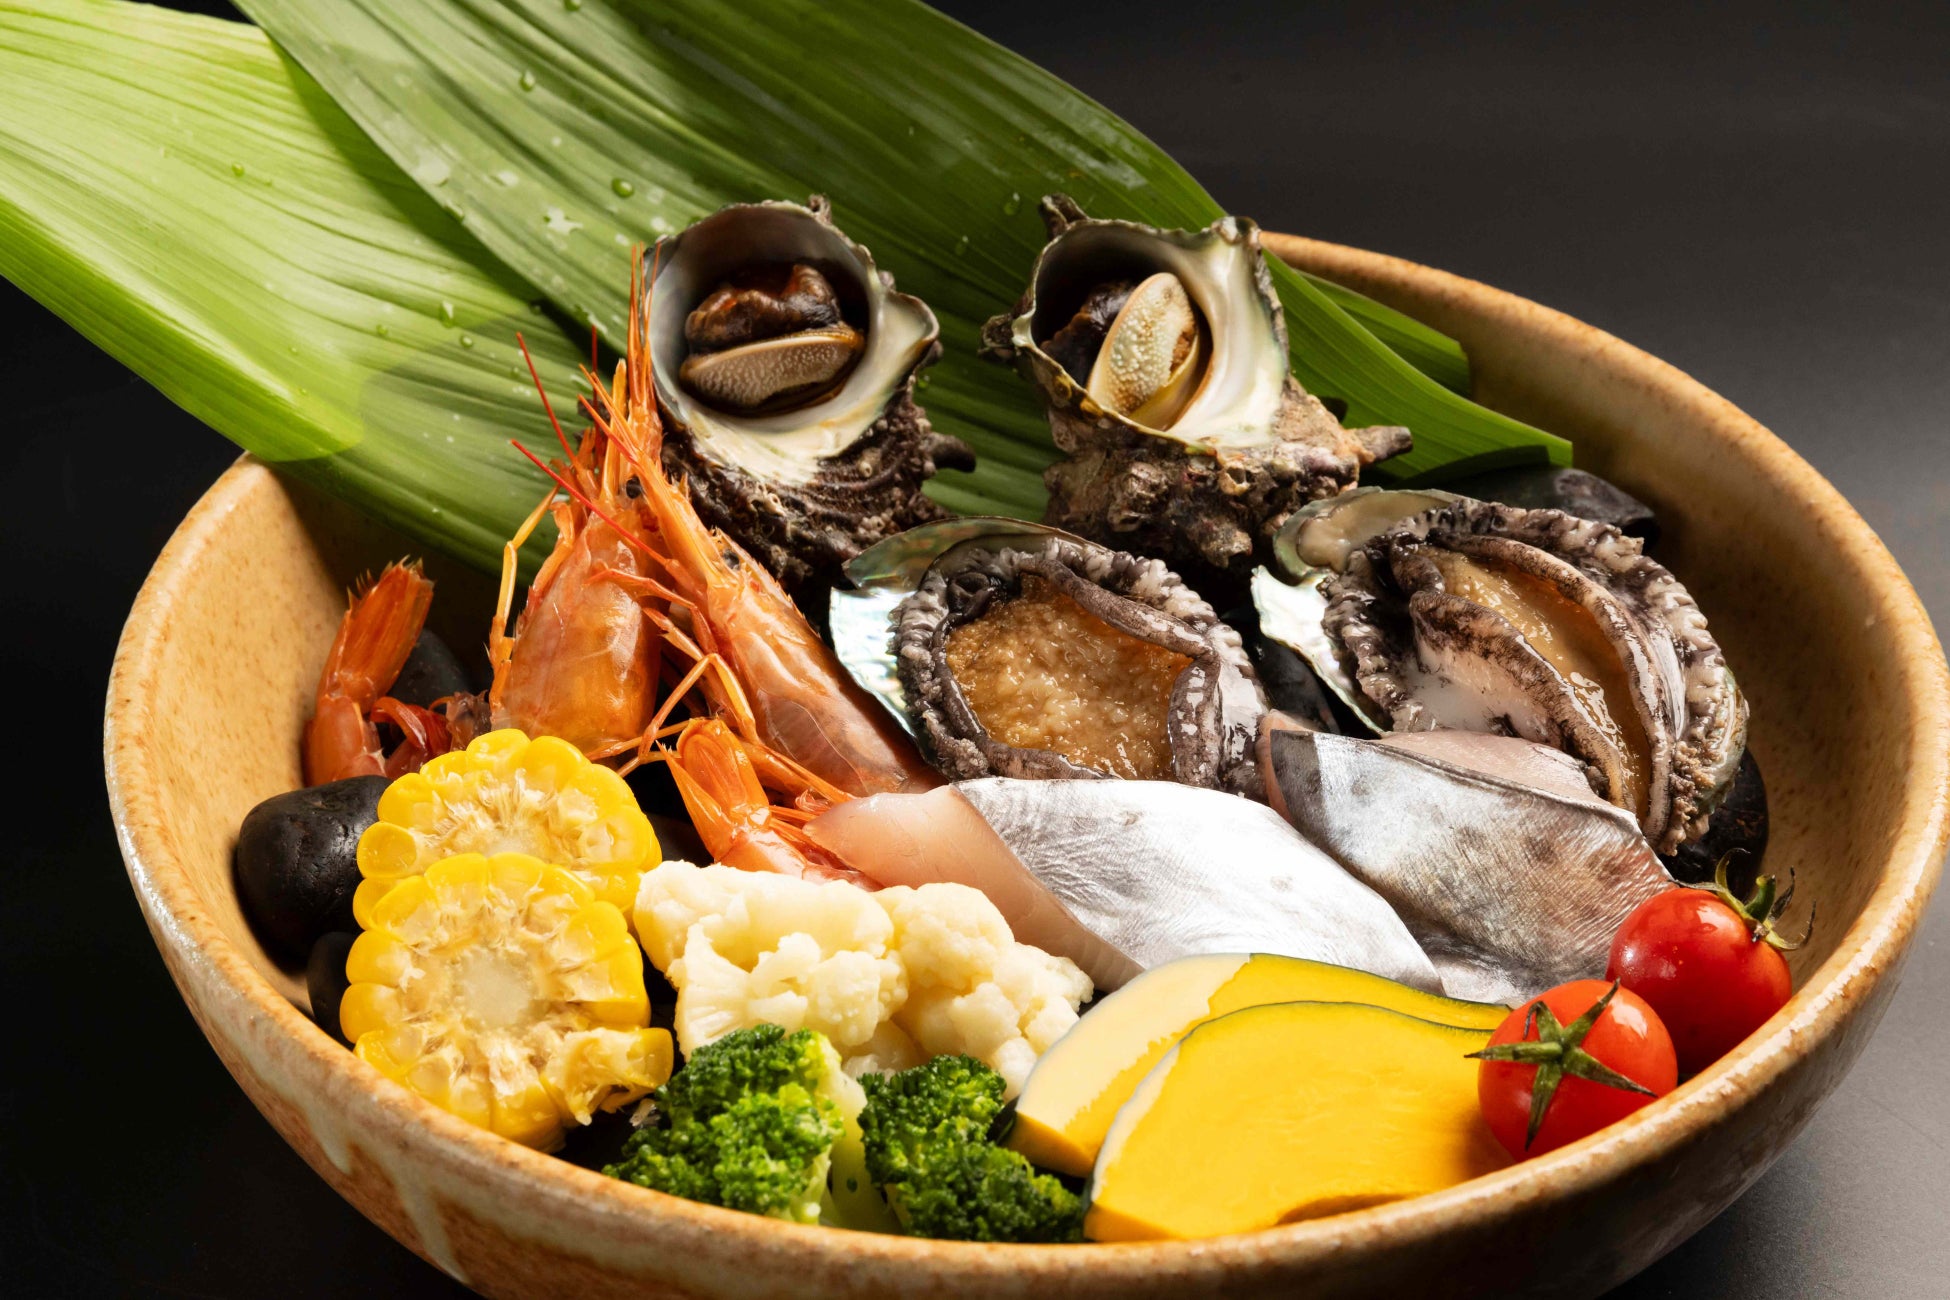 アワビやサザエなどの海の幸と、季節の魚や野菜を宝楽焼でお召し上がりいただくお料理をメインとした夏のプレミアム会席をご用意しています